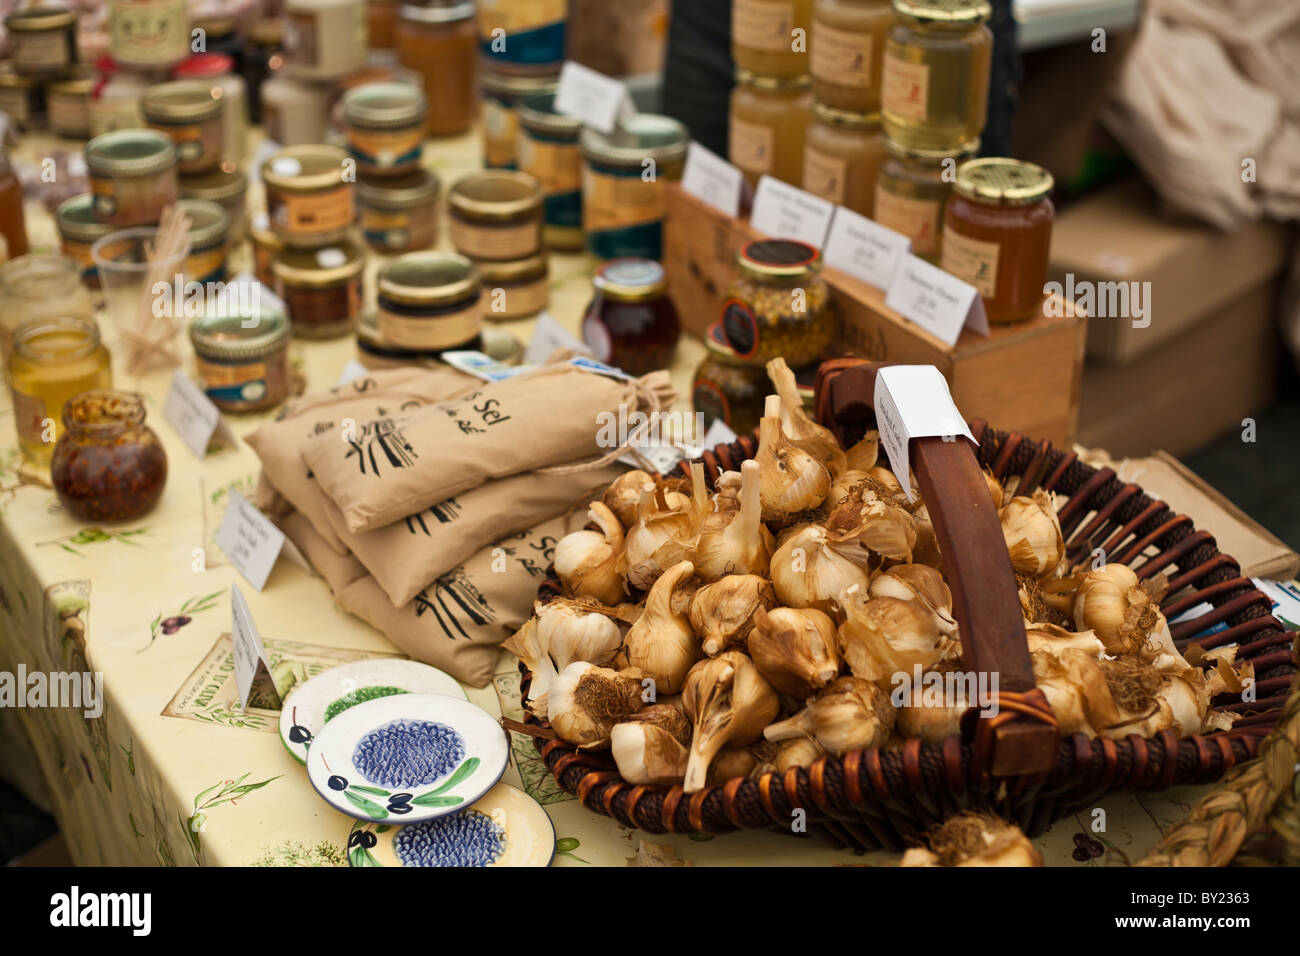 Inghilterra, Shropshire, Ludlow. Un display di marmellate e mostarde e un cesto pieno di aglio, a Ludlow Food Festival. Foto Stock